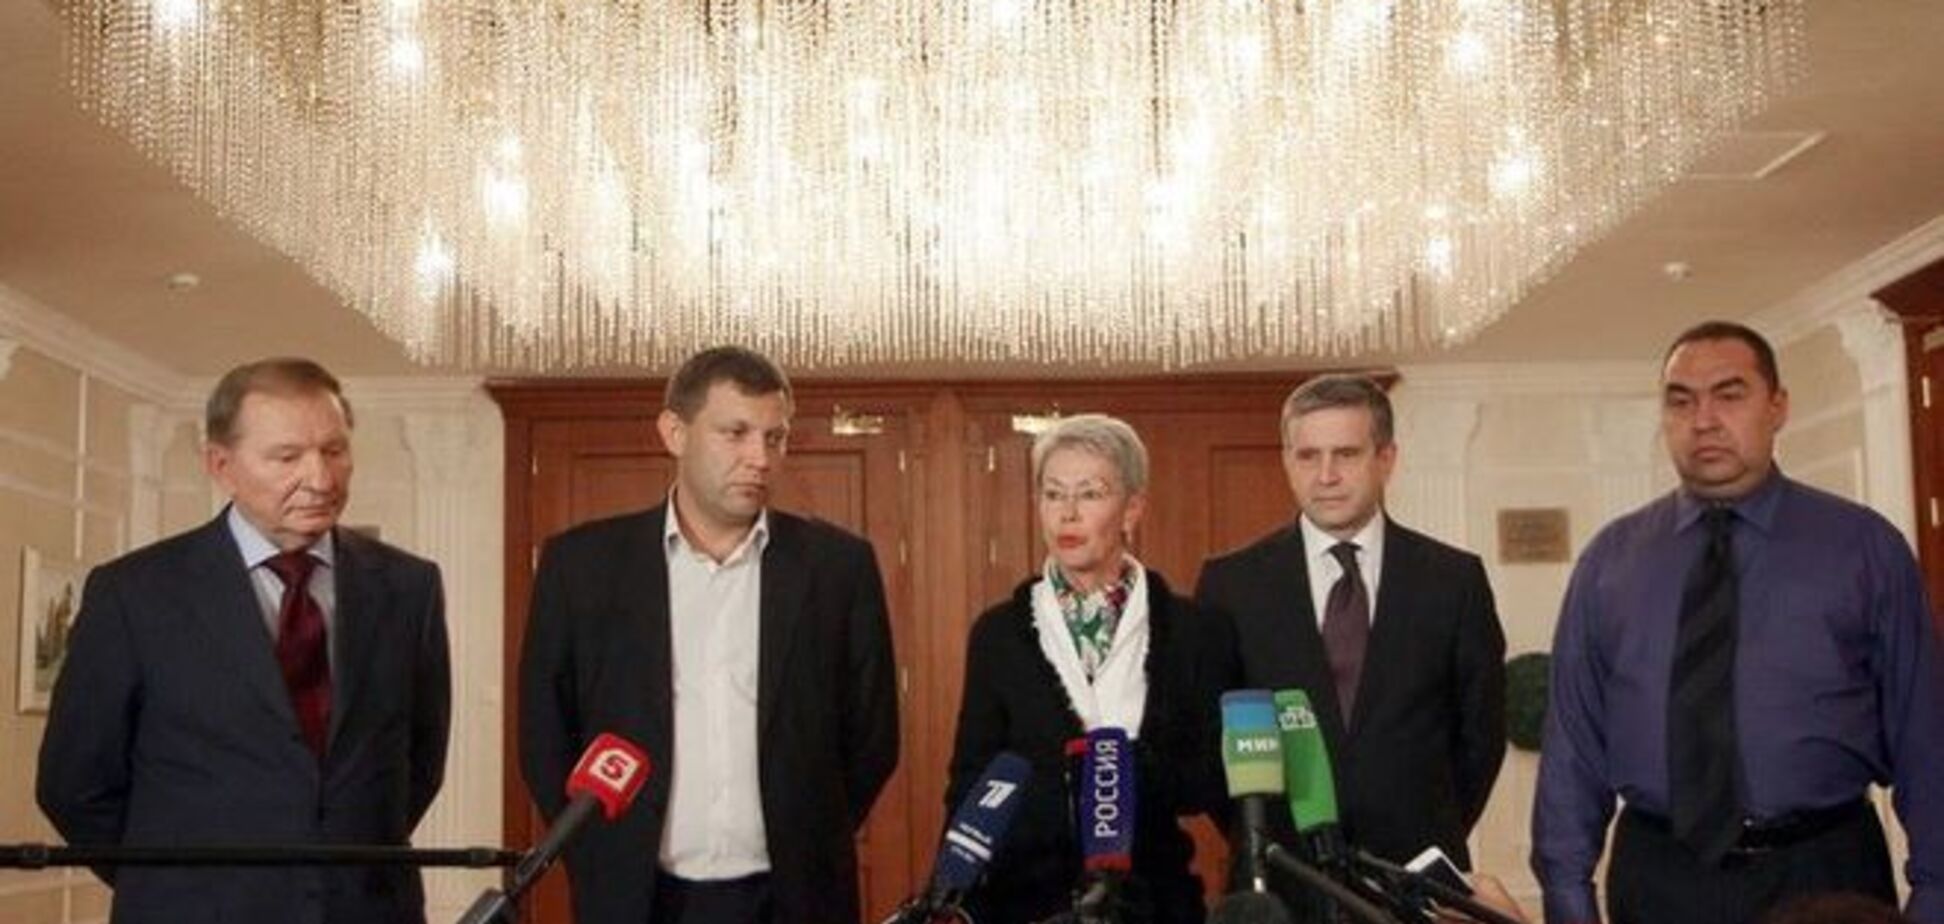 Порошенко об очередном раунде переговоров в Минске: смотрю со сдержанным оптимизмом